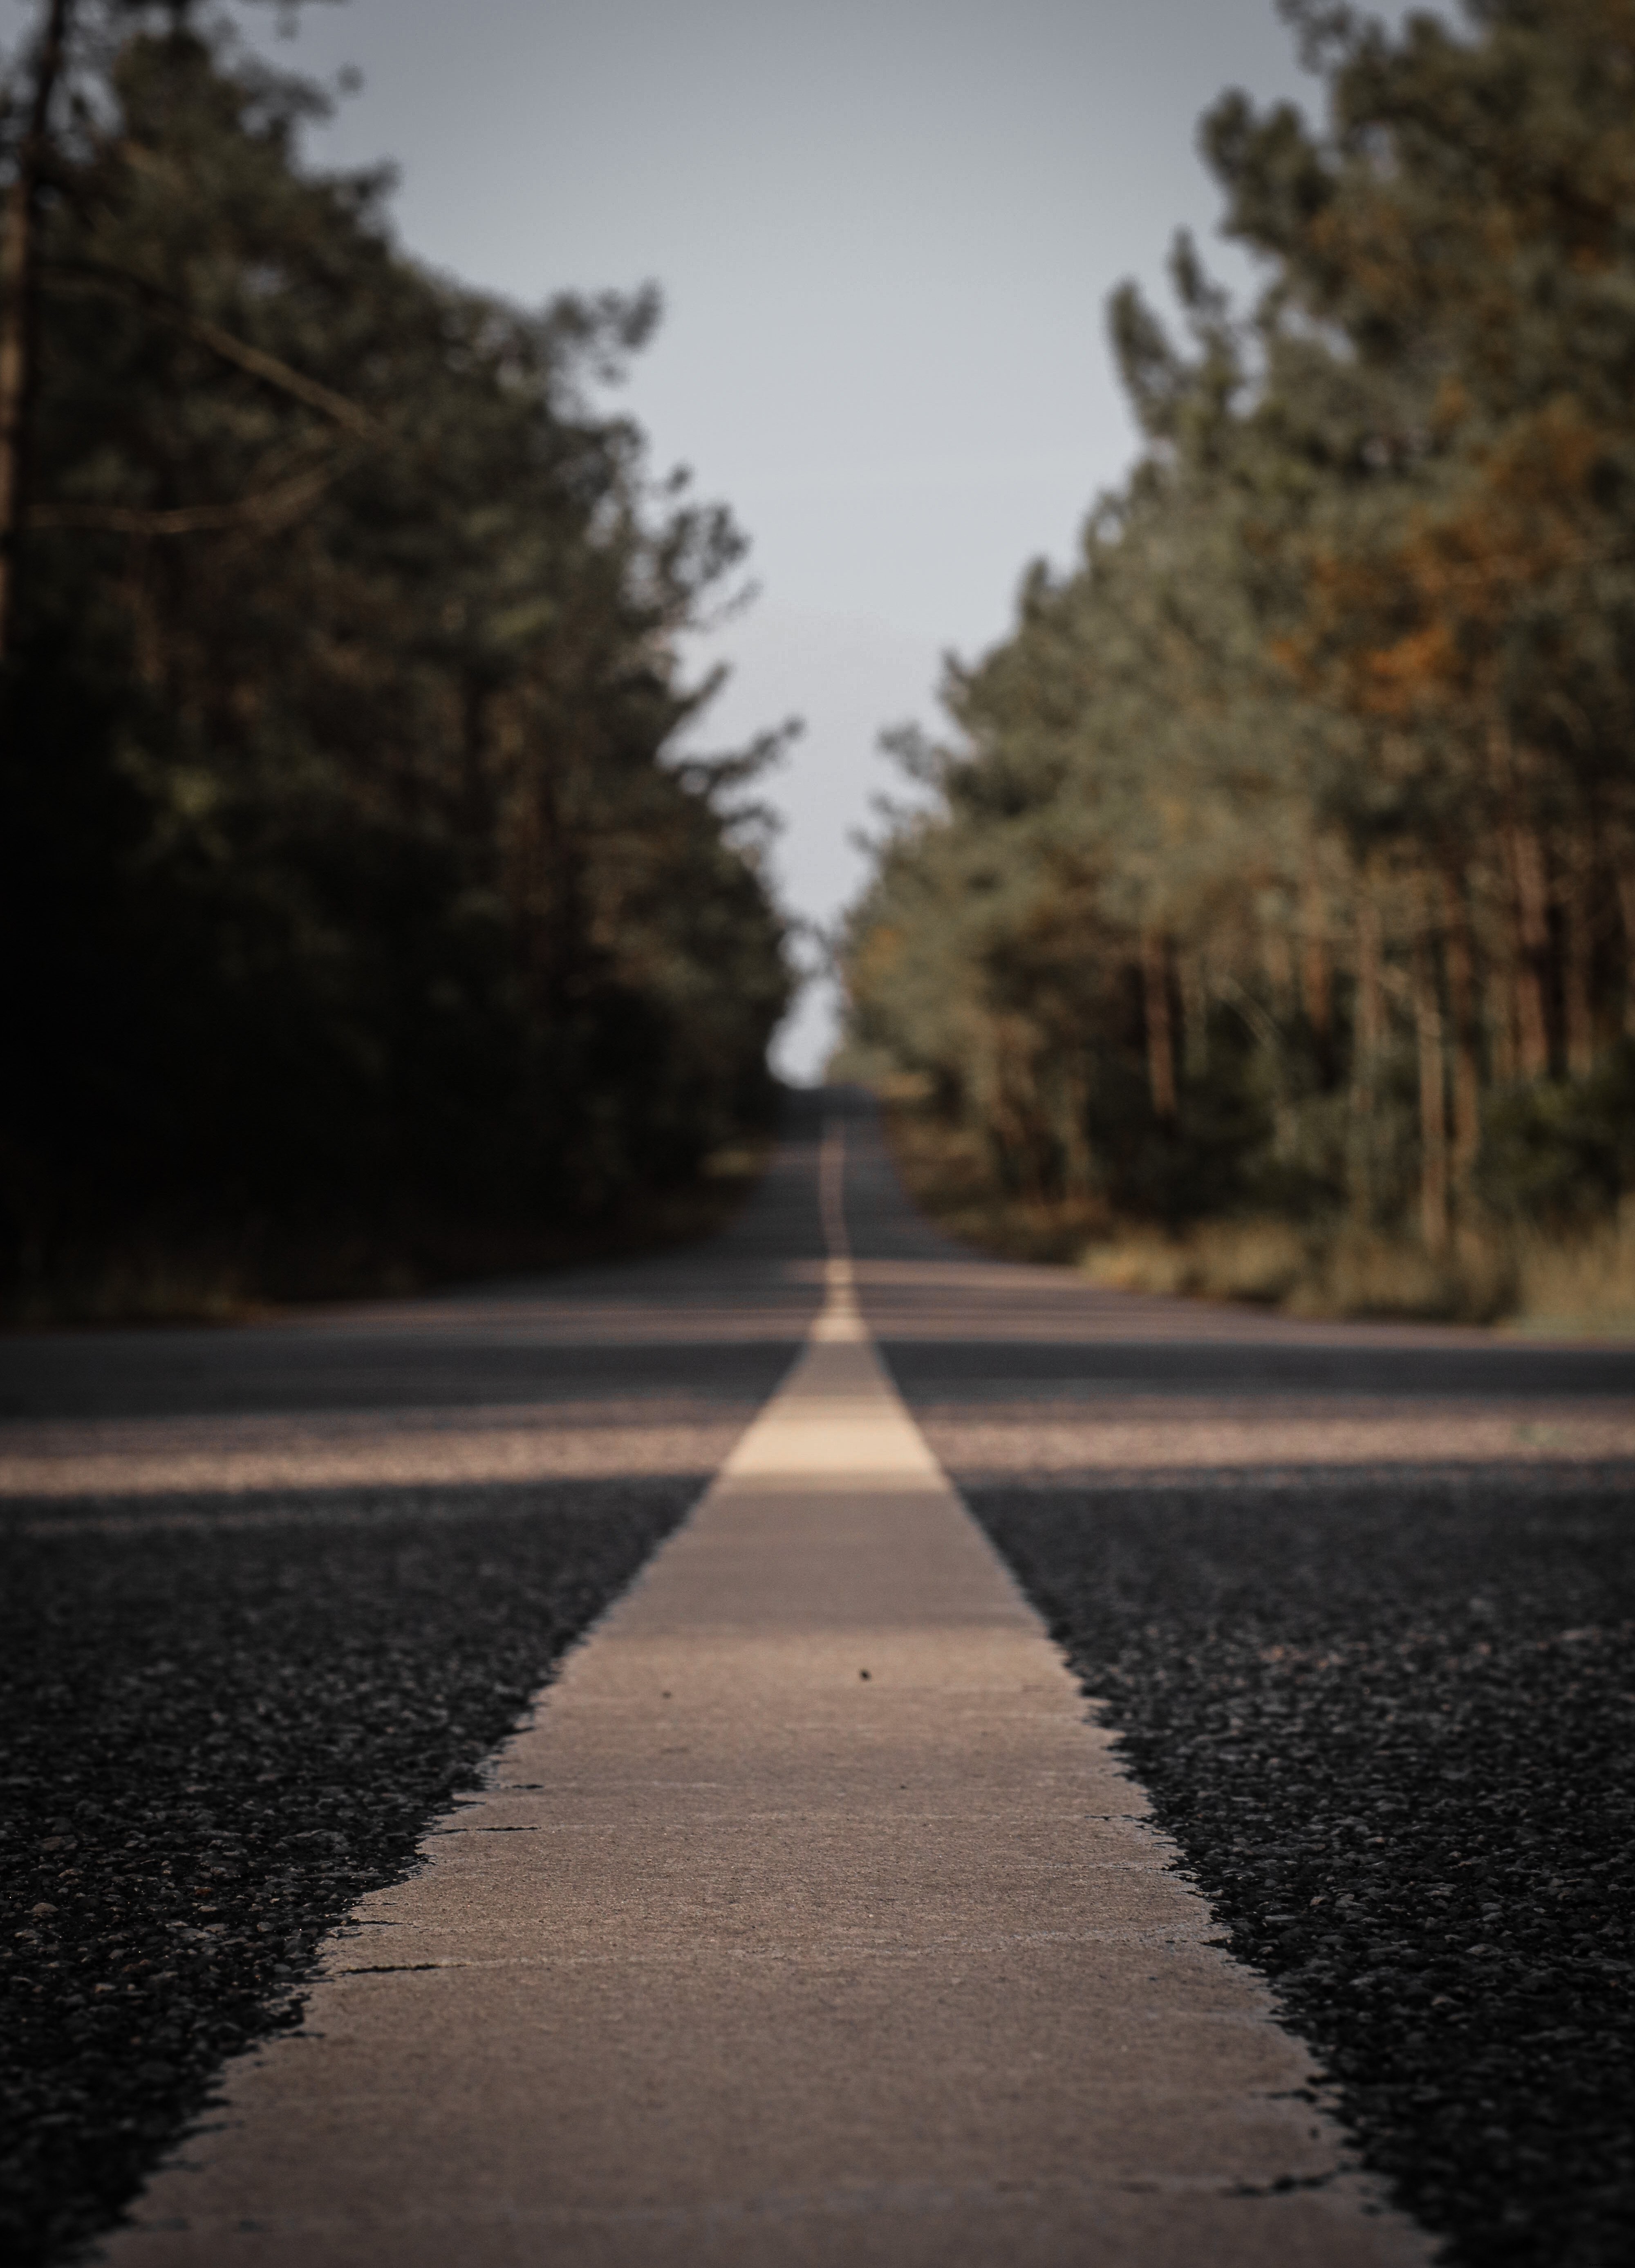 Mire hacia la línea blanca de una foto de una carretera pavimentada 